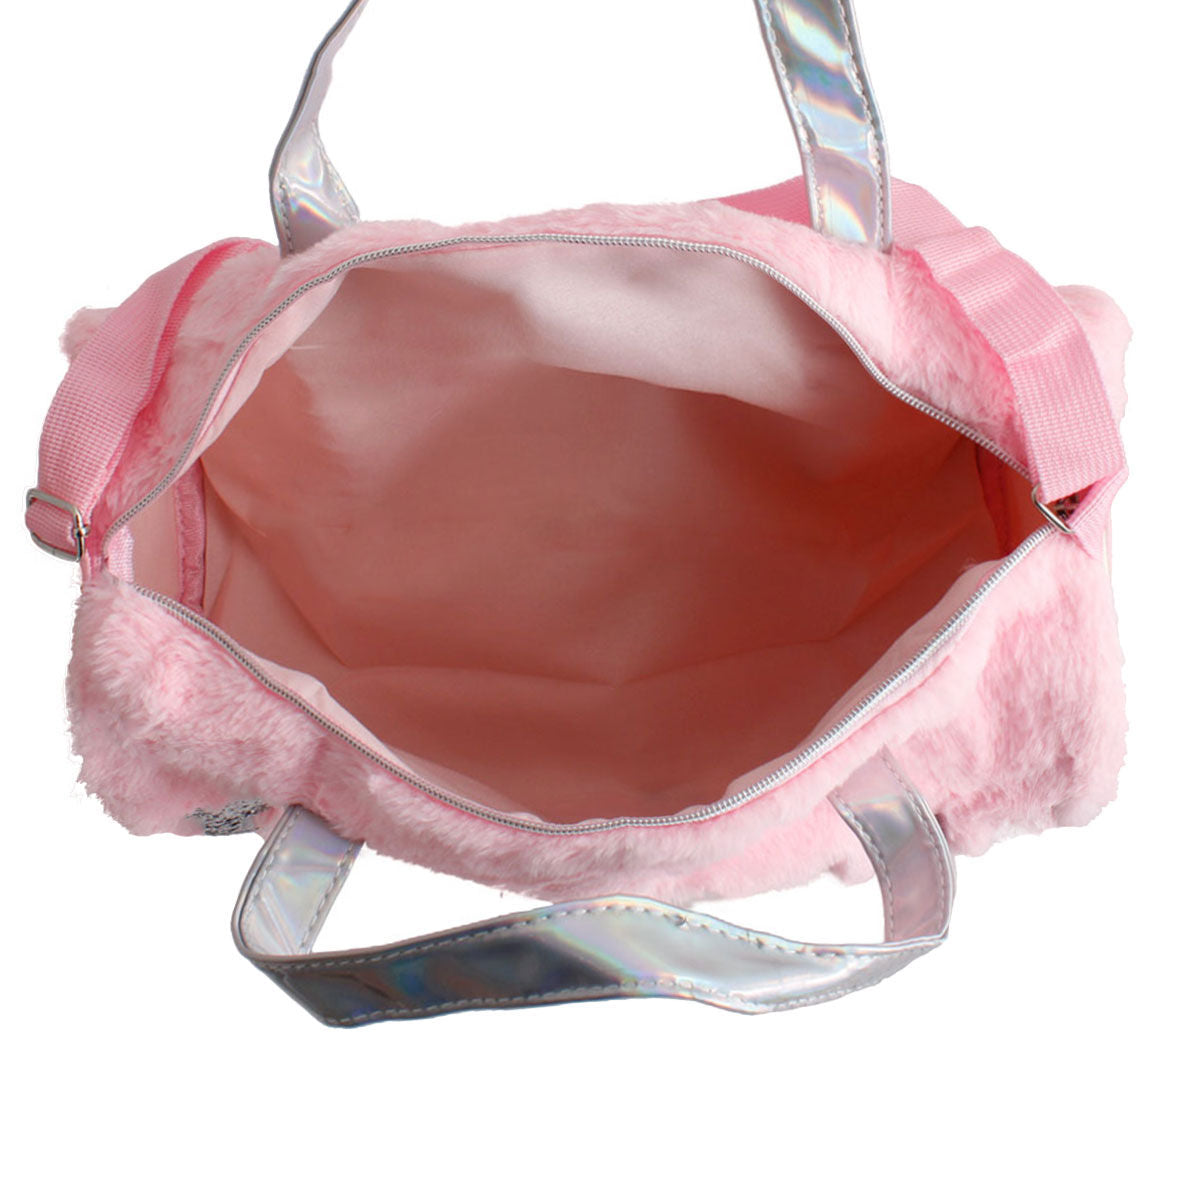 Pink Fur Glitter Duffel Bag